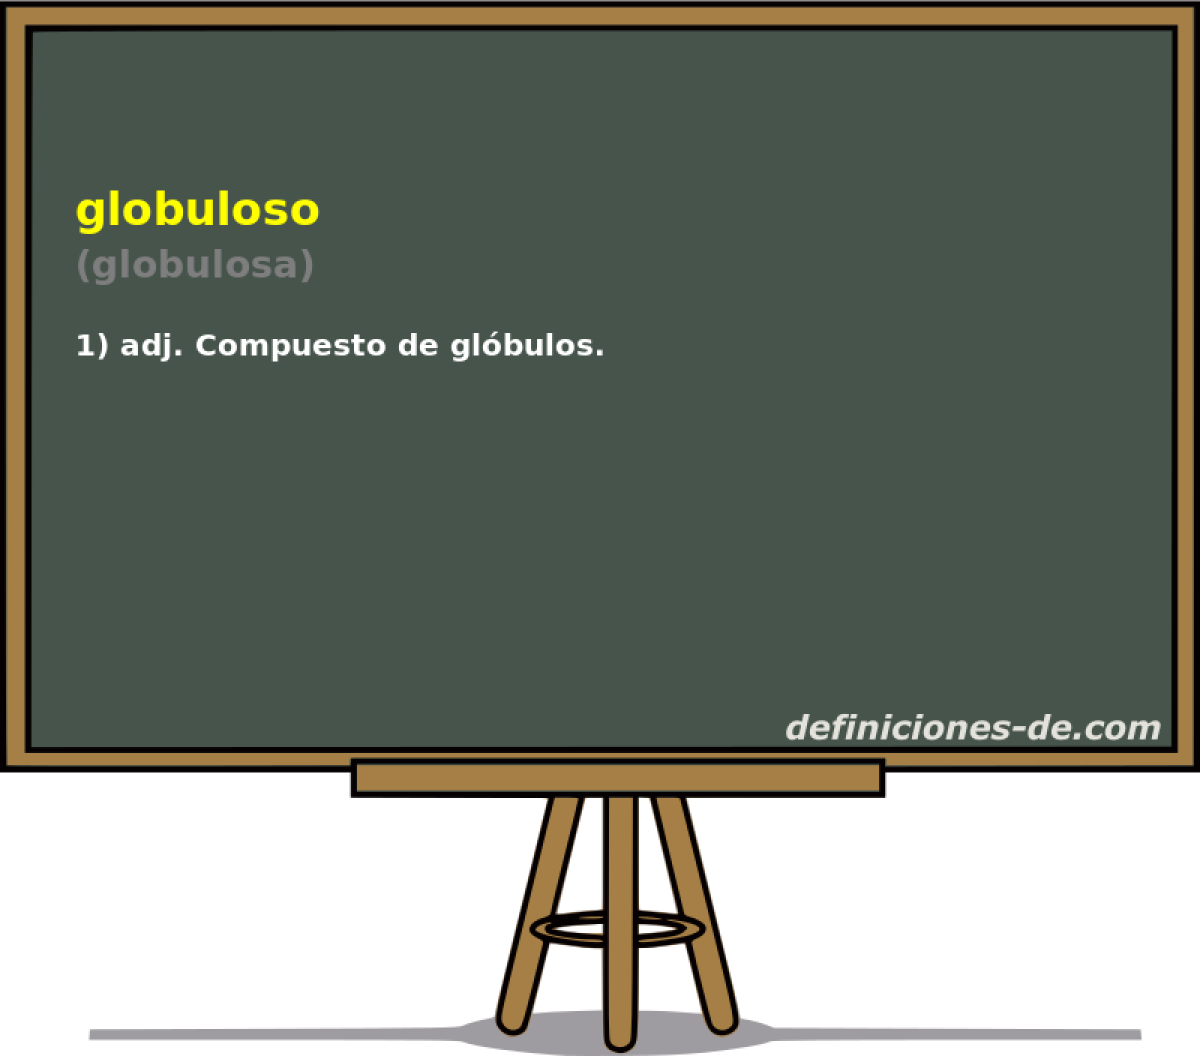 globuloso (globulosa)